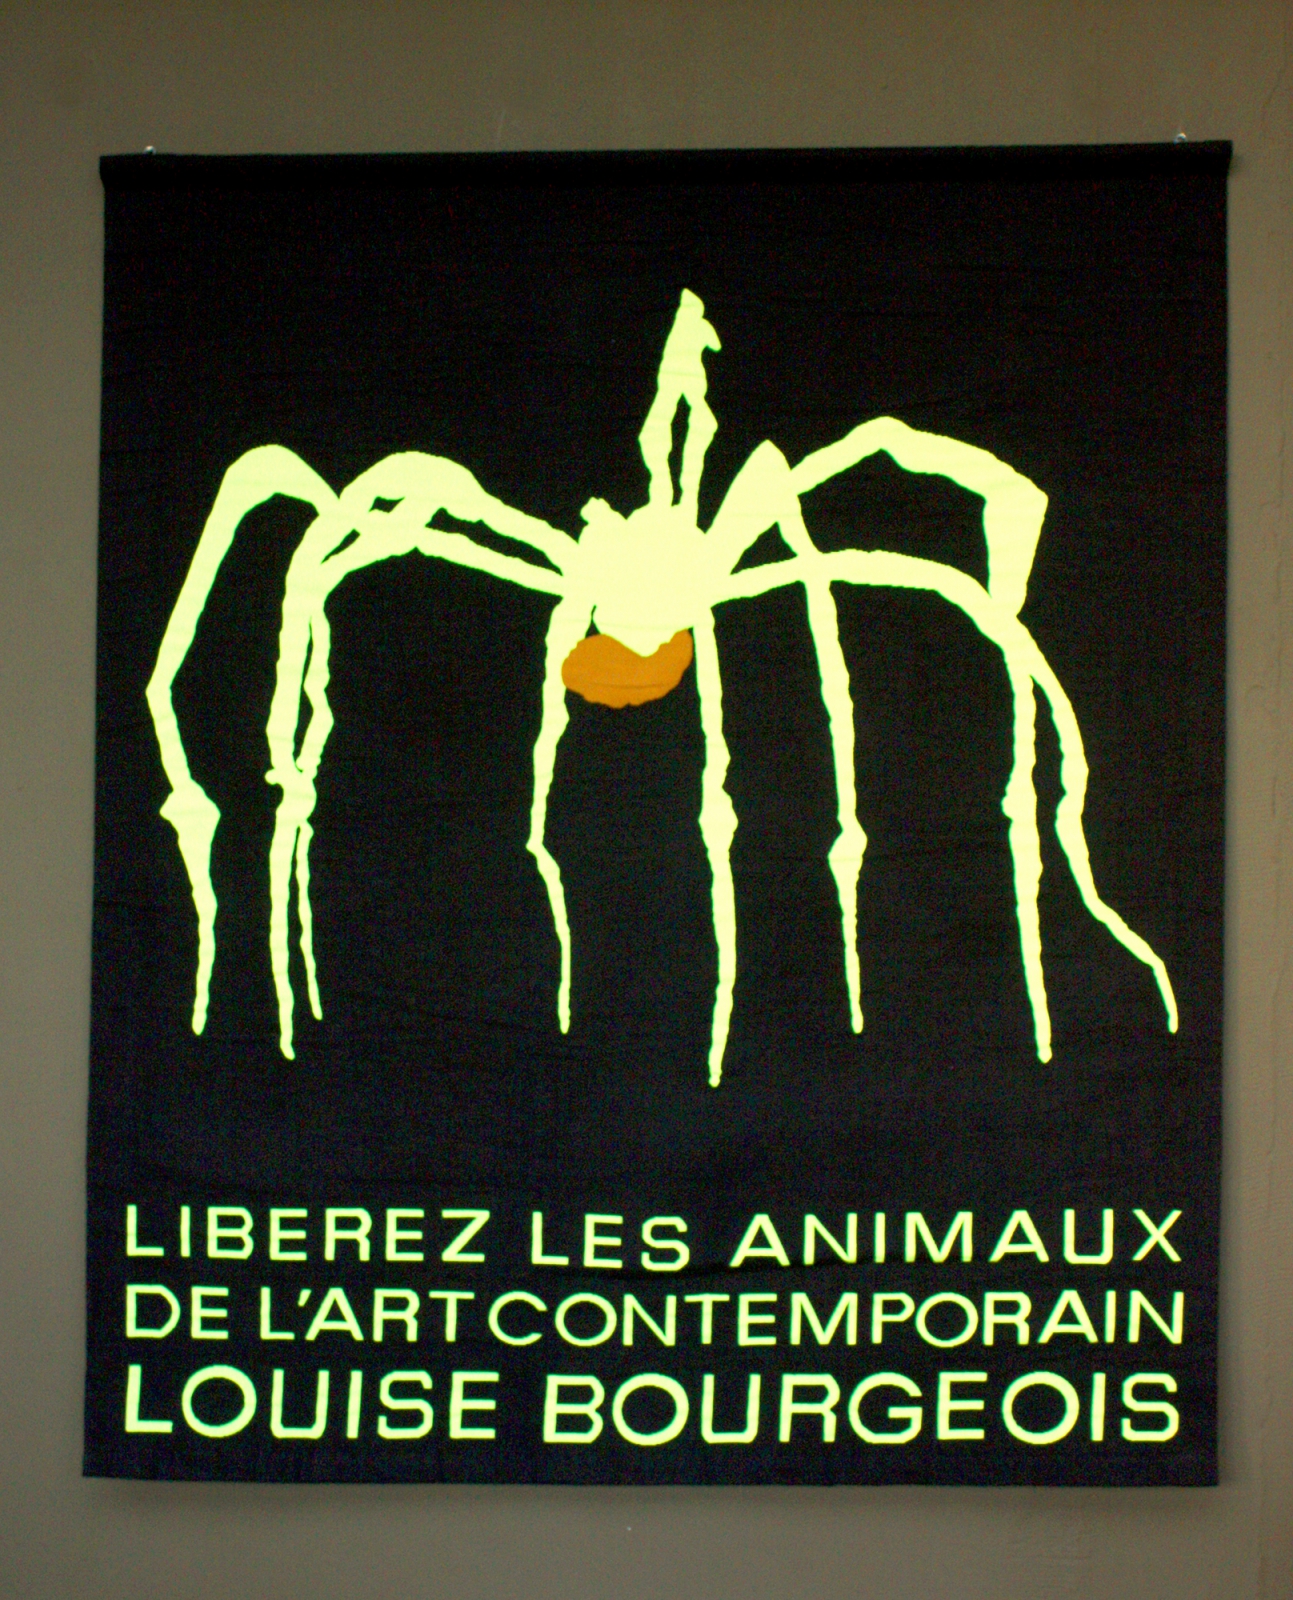 pascal-lievre-liberez-les- animaux-de- l-'-art-contemporain- louise-bourgeois-2009-tapisserie-numerique- aubusson-neolice